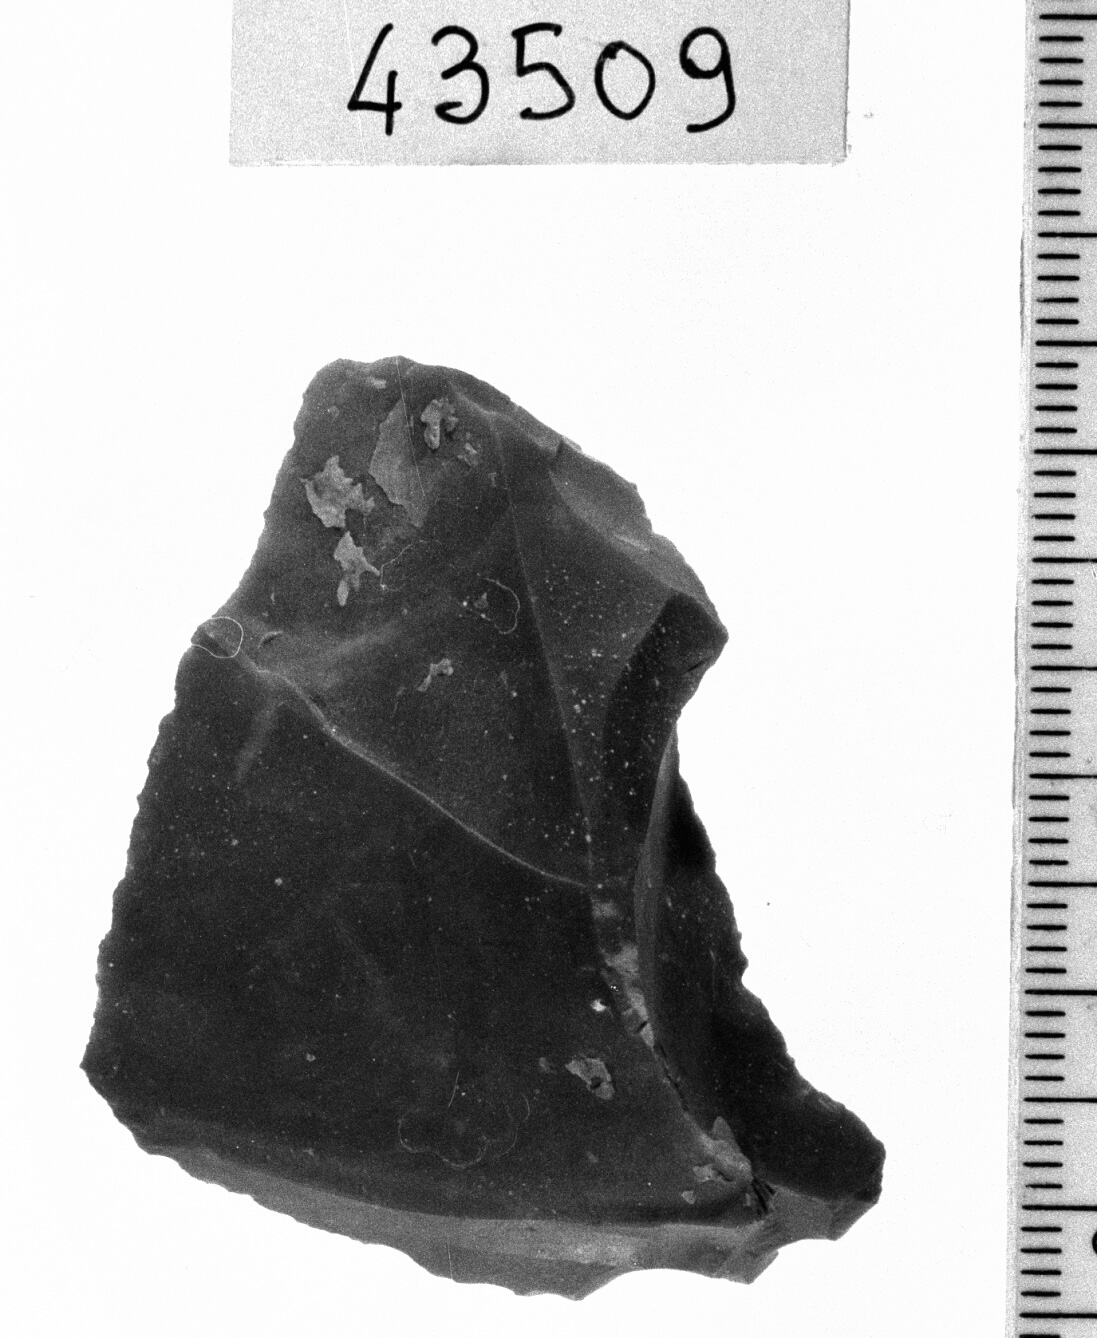 grattatoio denticolato - Epigravettiano (Paleolitico superiore)